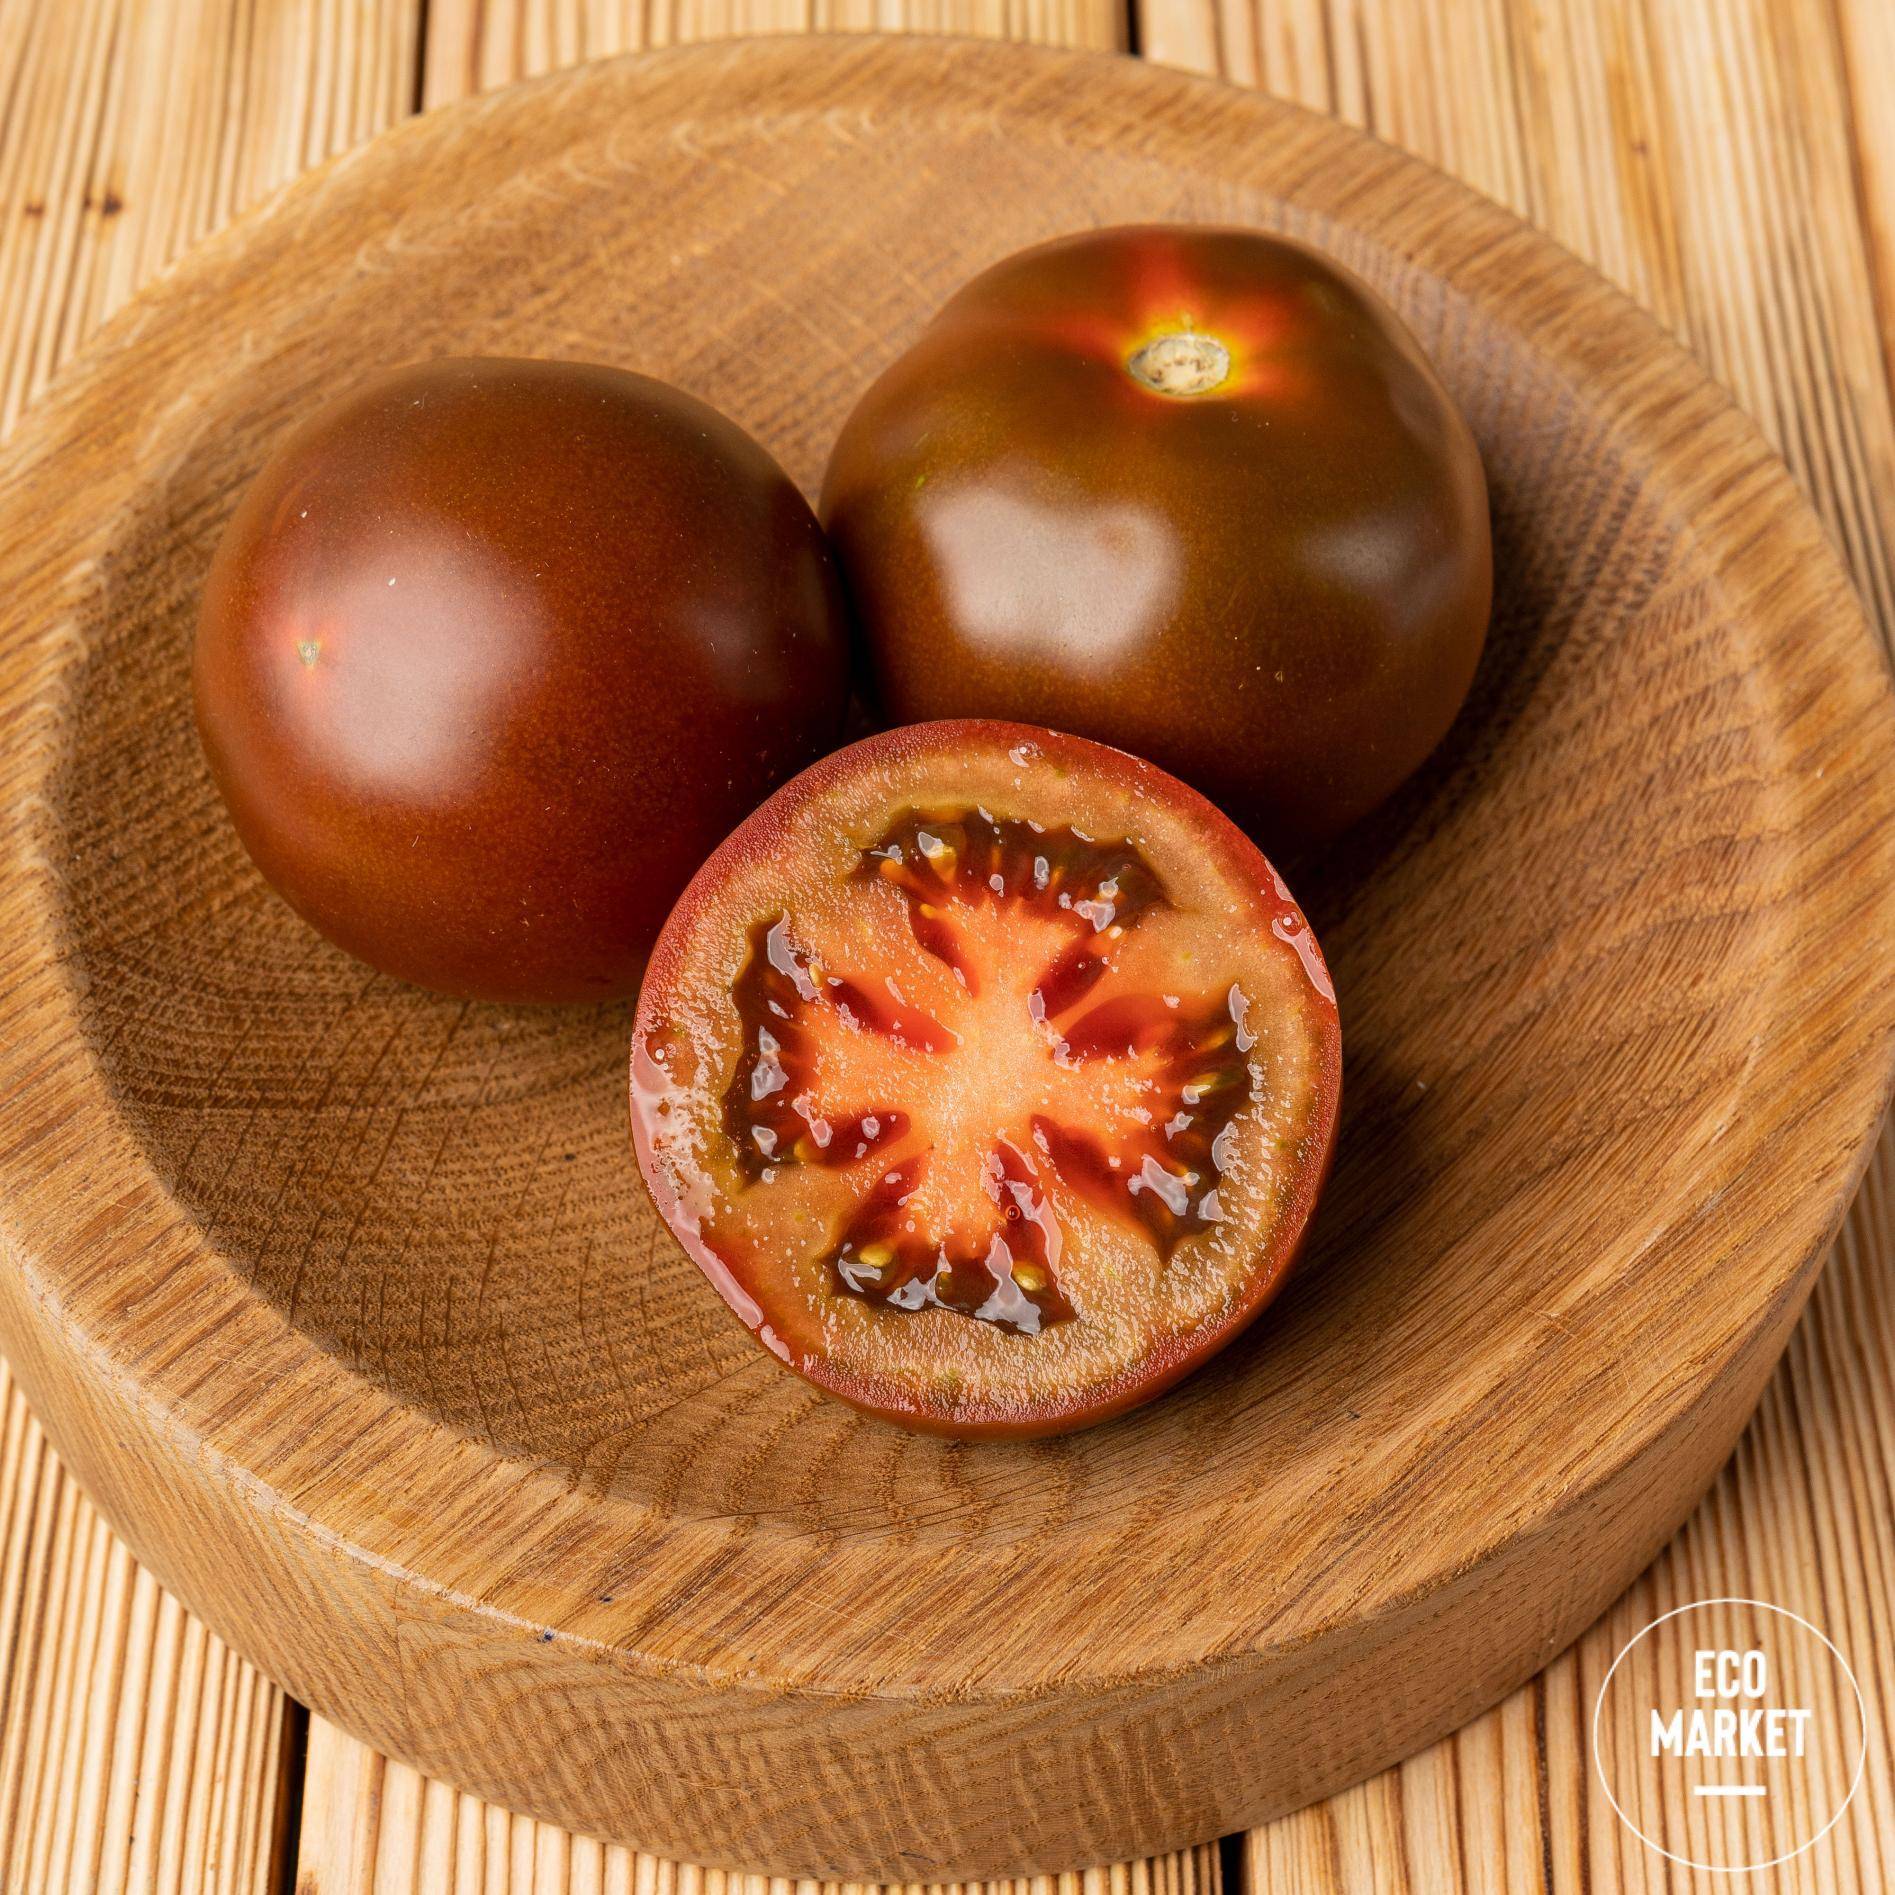 Сортовые особенности помидоров кумато